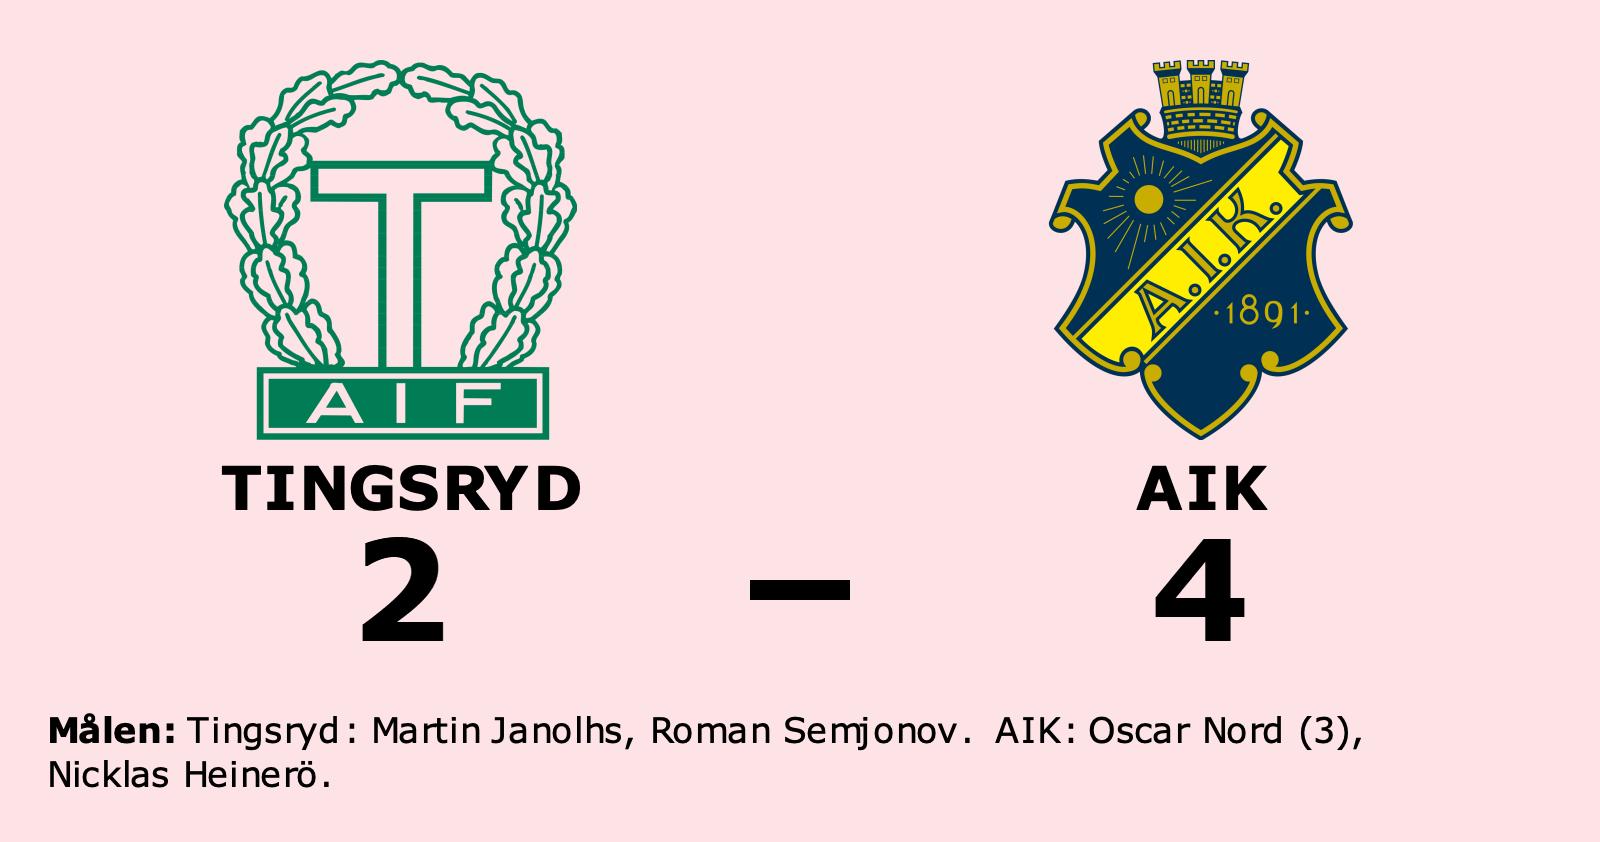 Tung start för Tingsryd efter förlust mot AIK